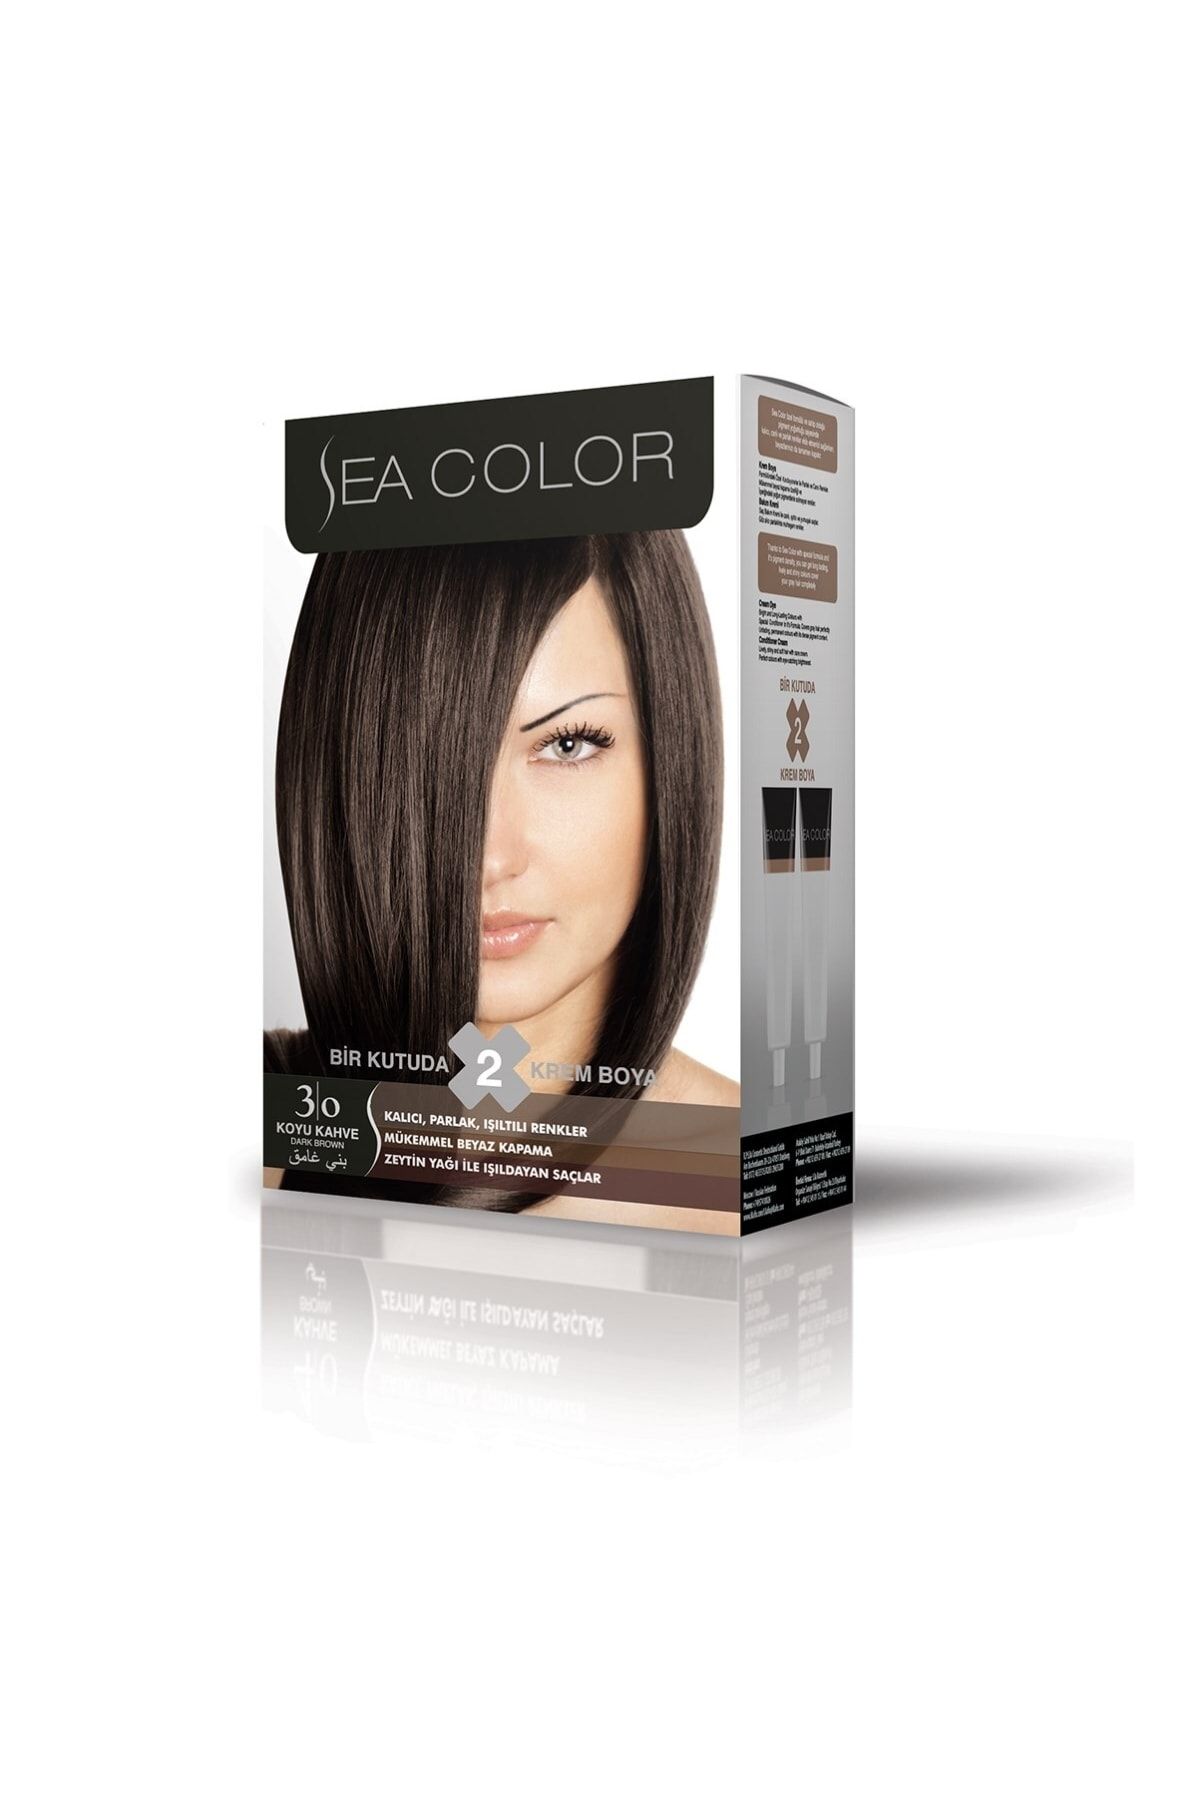 Sea Color Marka: Set Saç Boyası Koyu Kahve 3.0 Kategori: Saç Boyası